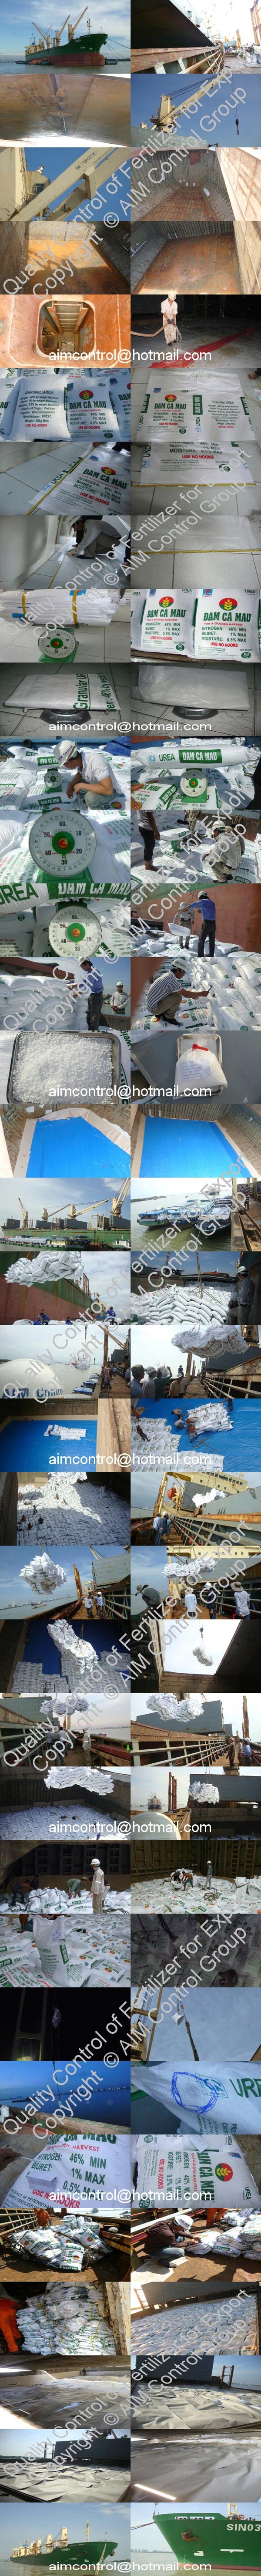 Loading_supervision_for_urea_cargo_n_vessel_in_Ho_Chi_Minh_city_port_Vietnam